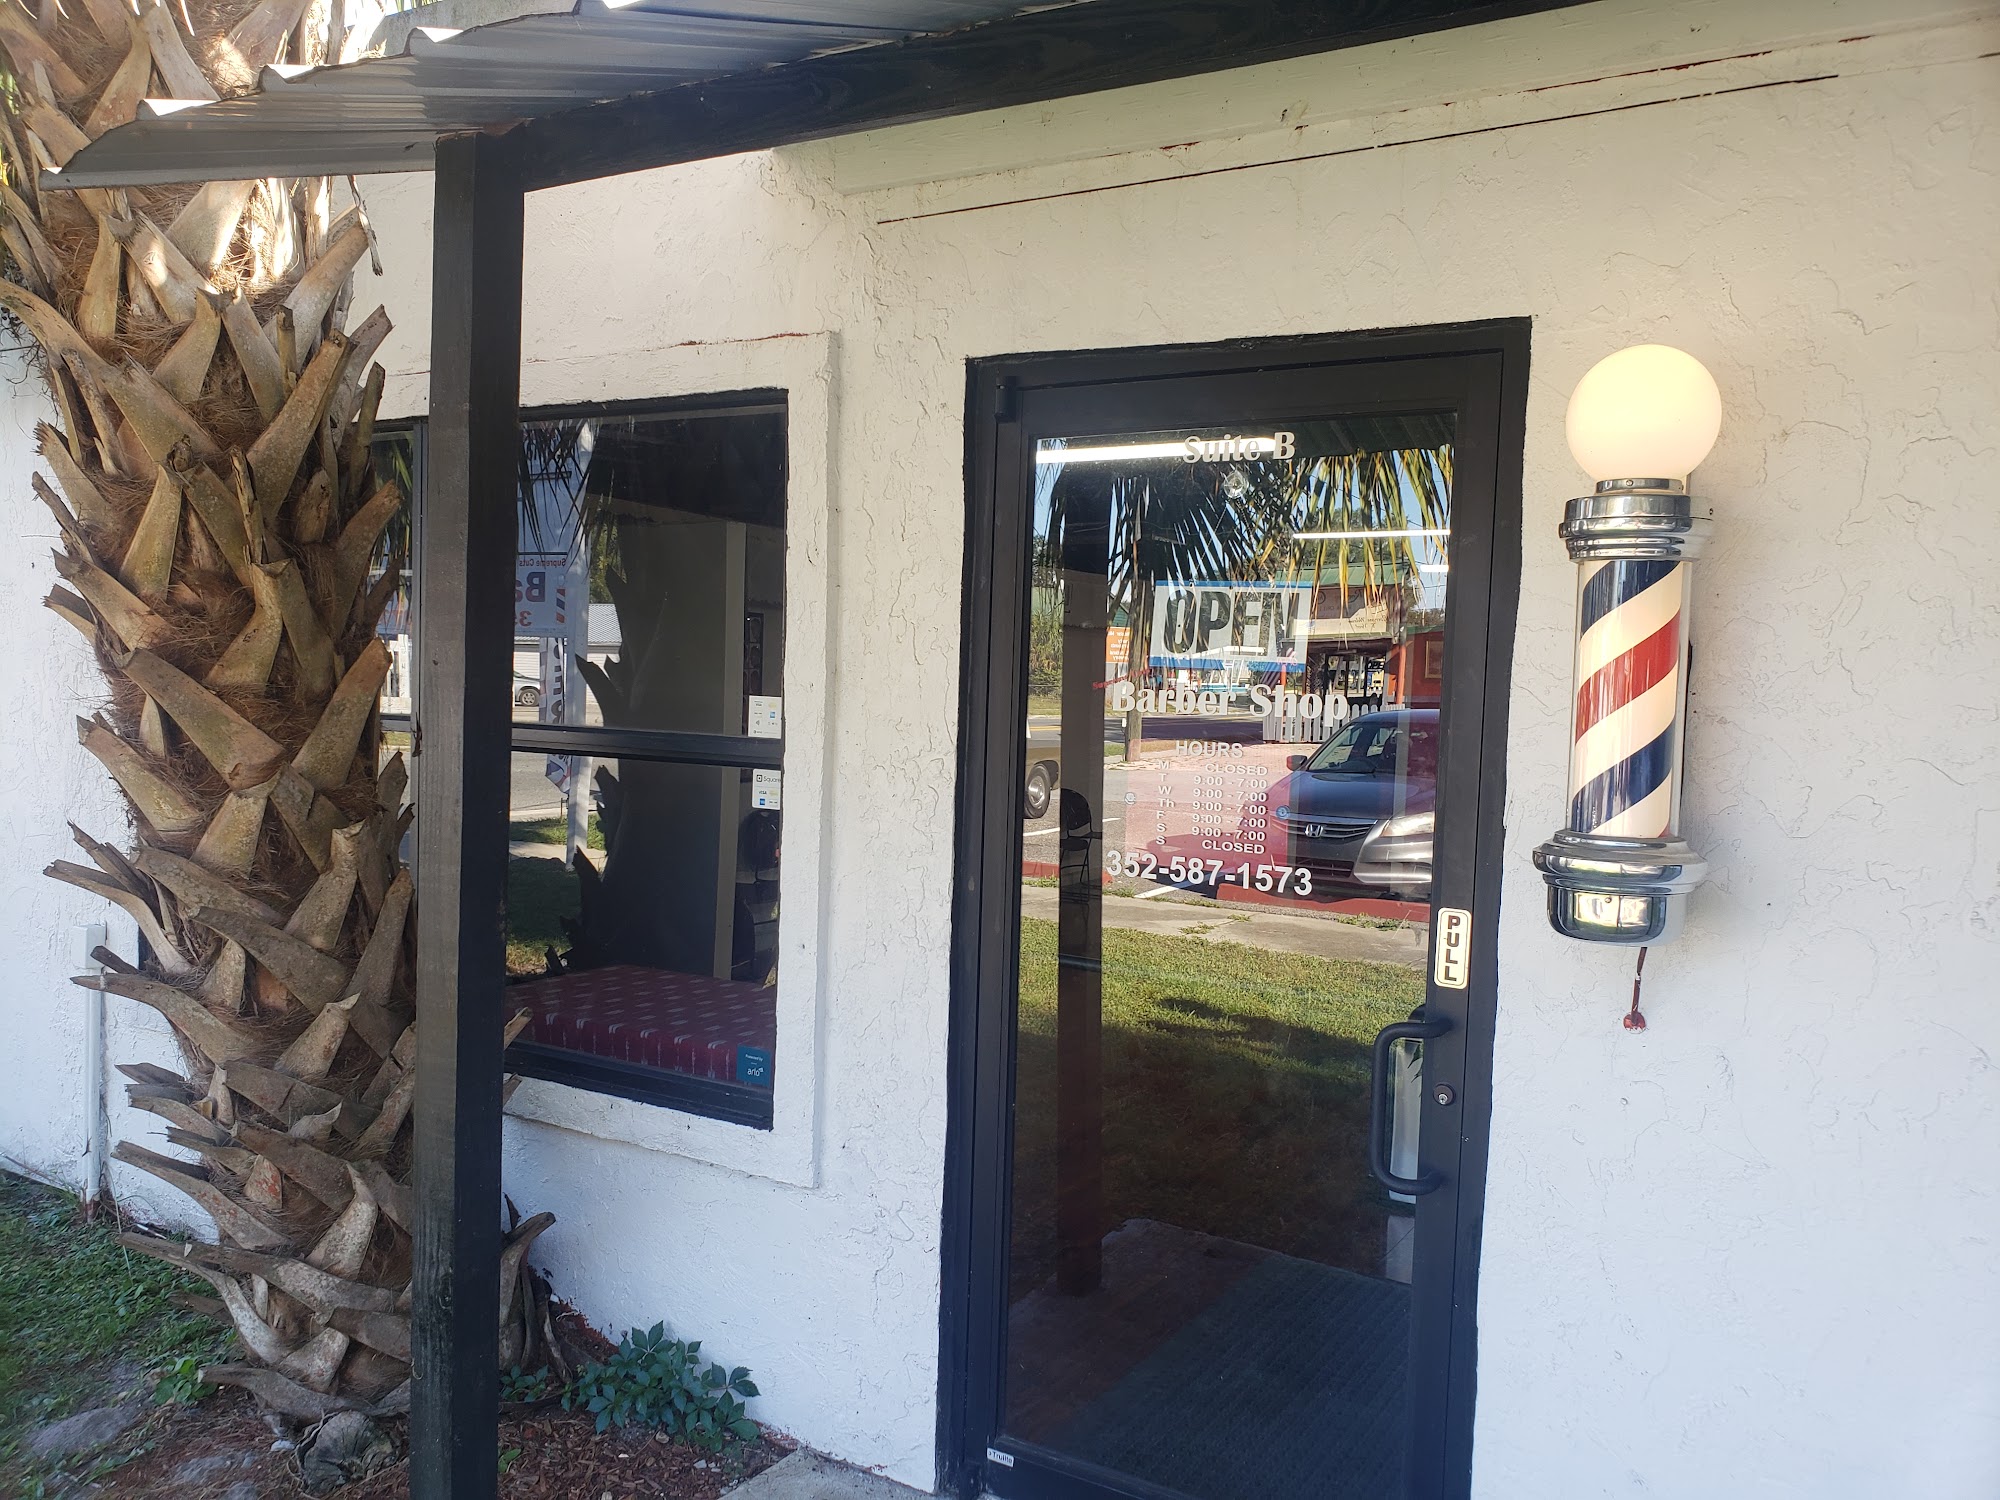 Supreme Cuts Barber Shop 276 N Market Blvd suite b, Webster Florida 33597